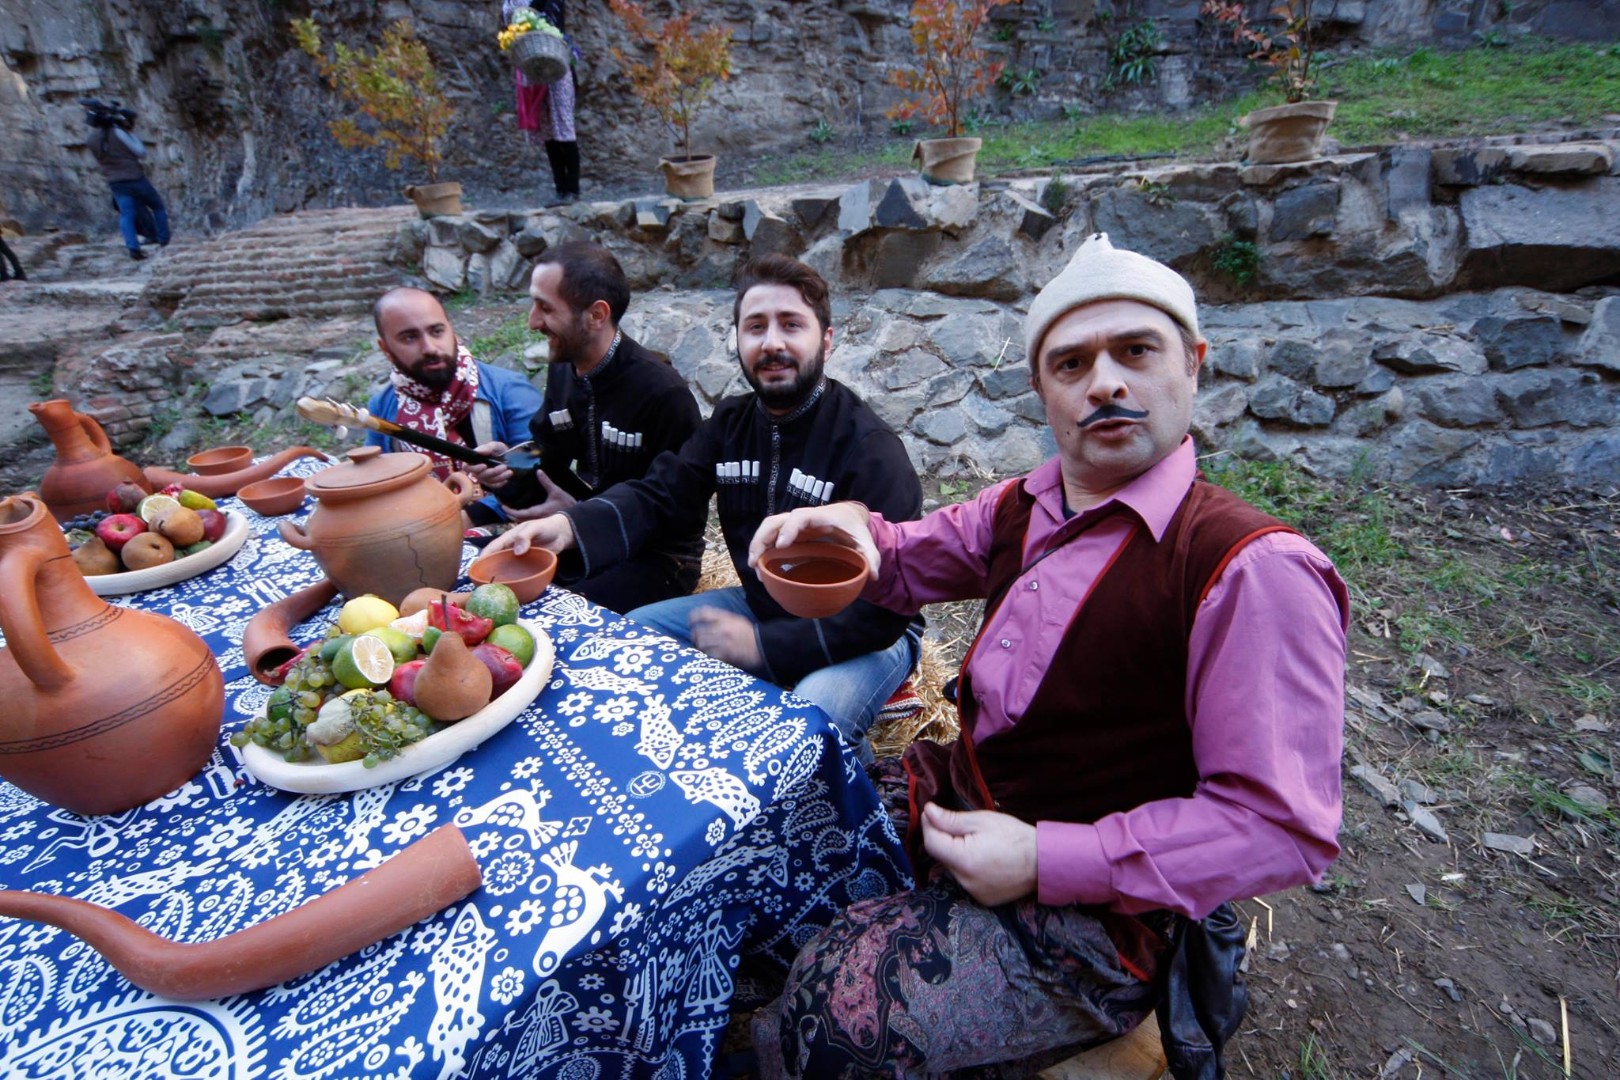 Жители грузии фото